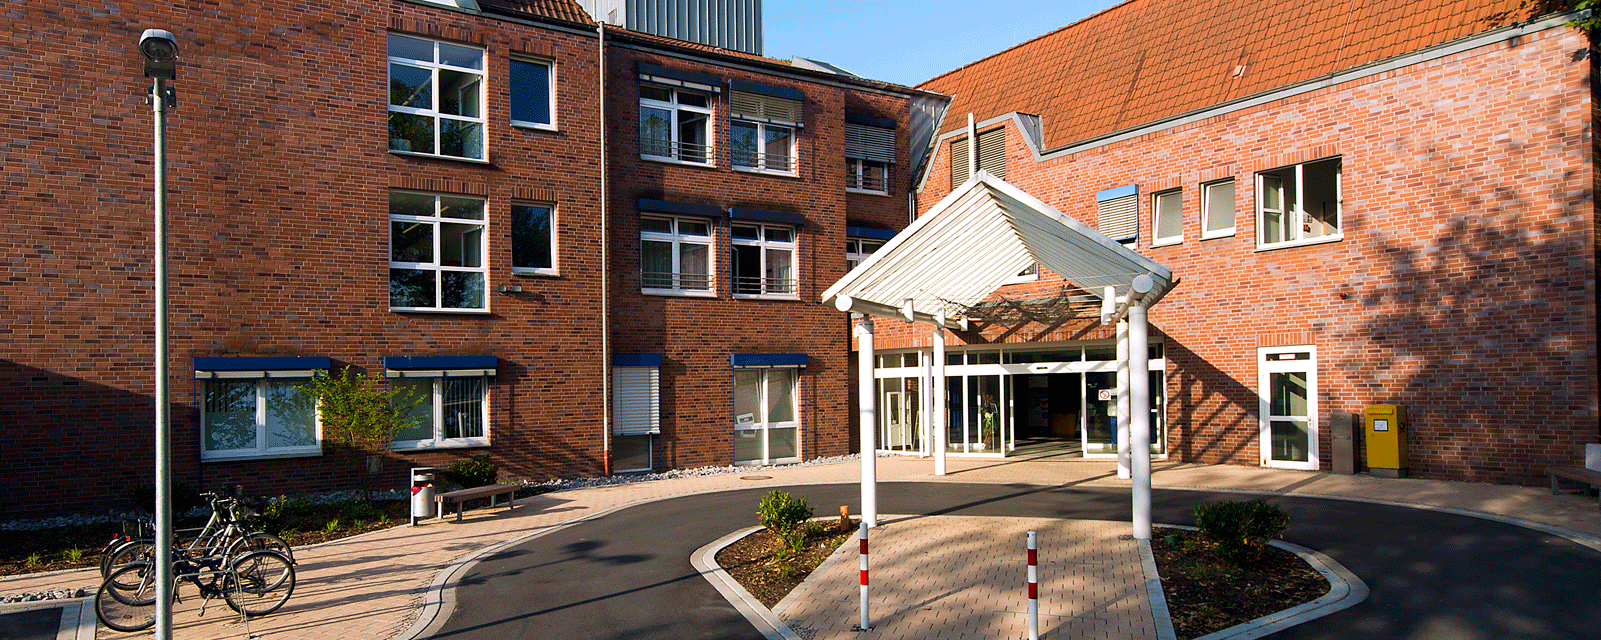 Willkommen im Kath. Krankenhaus Dortmund-West